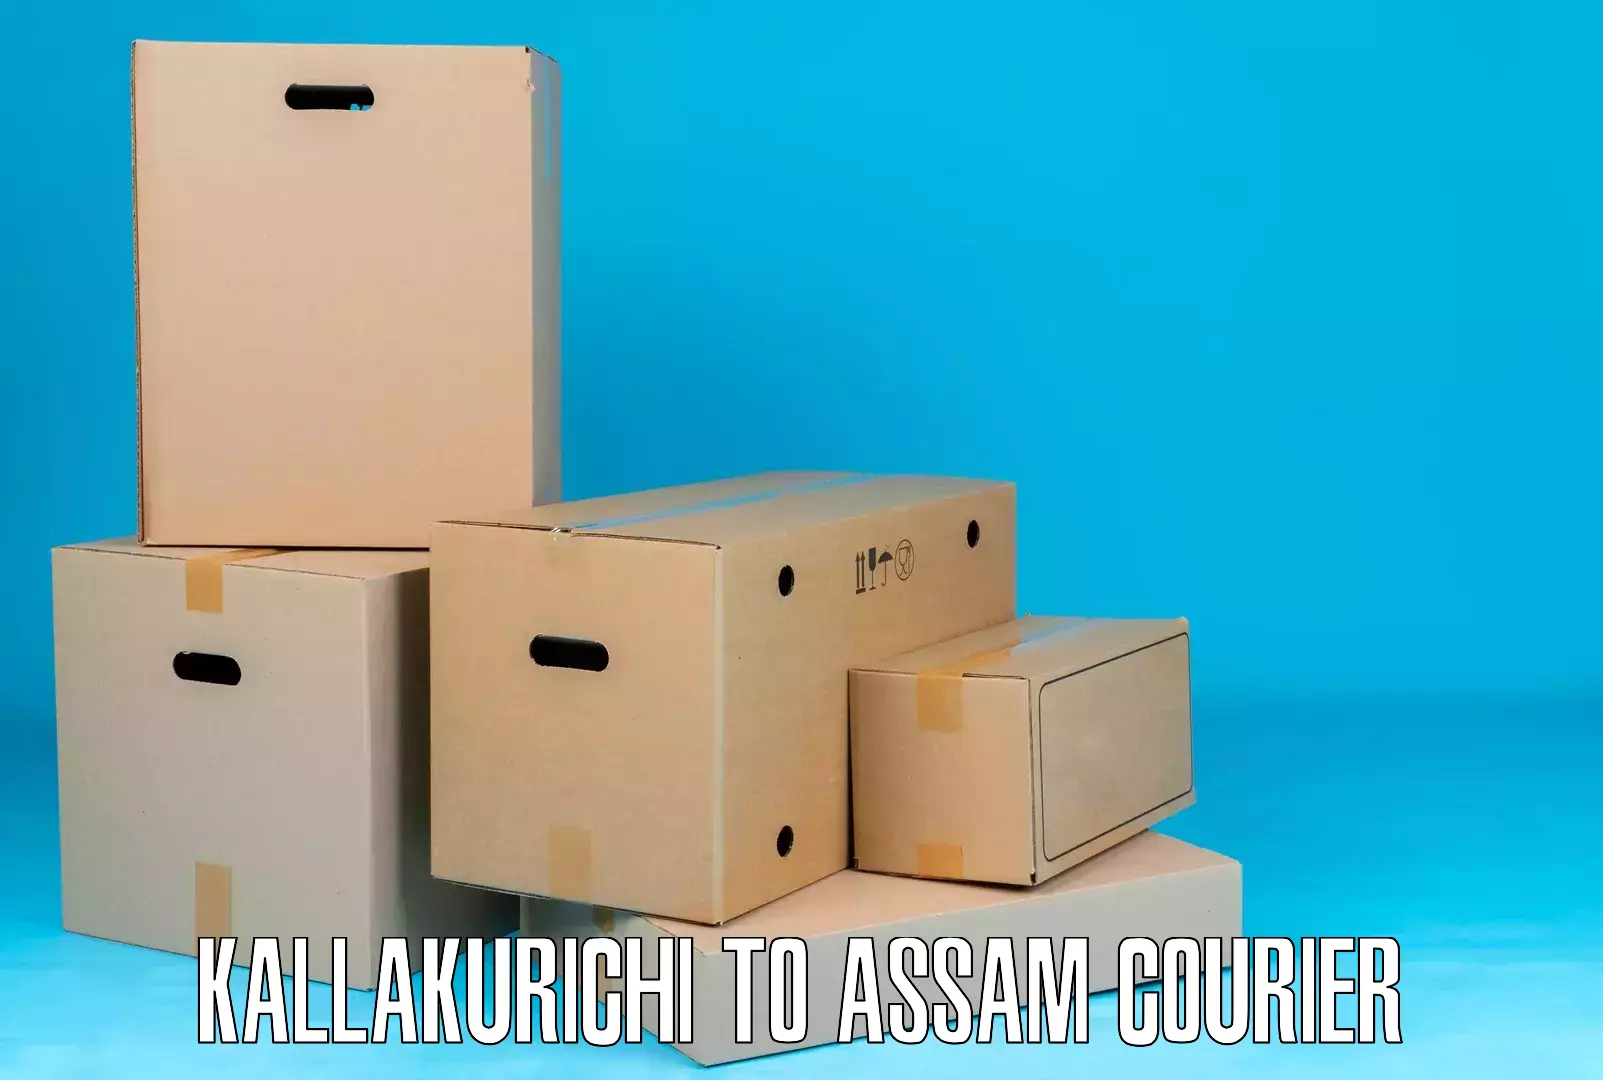 High-speed delivery Kallakurichi to Udalguri